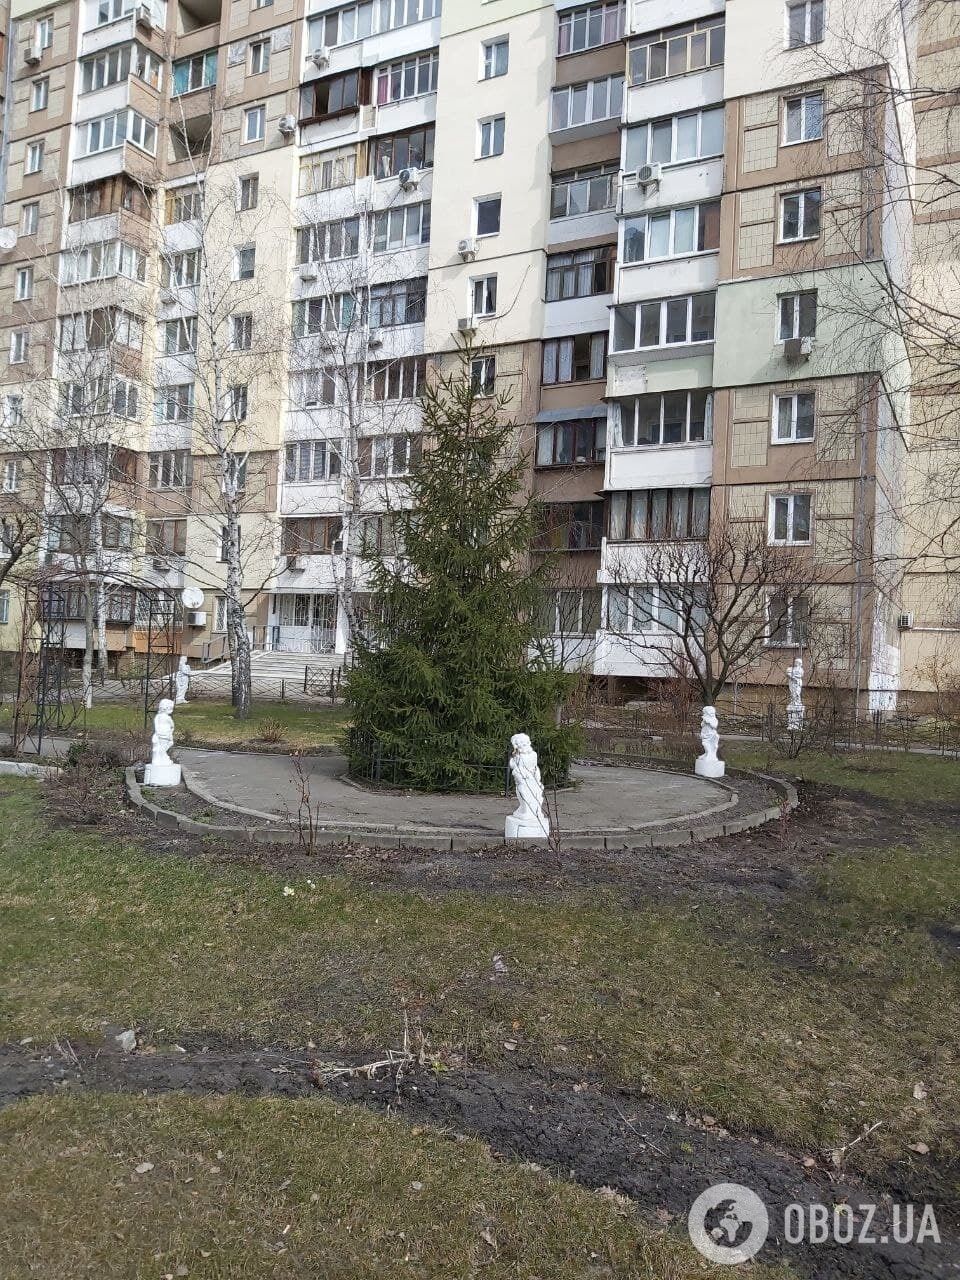 Музы украшают спальный район Киева